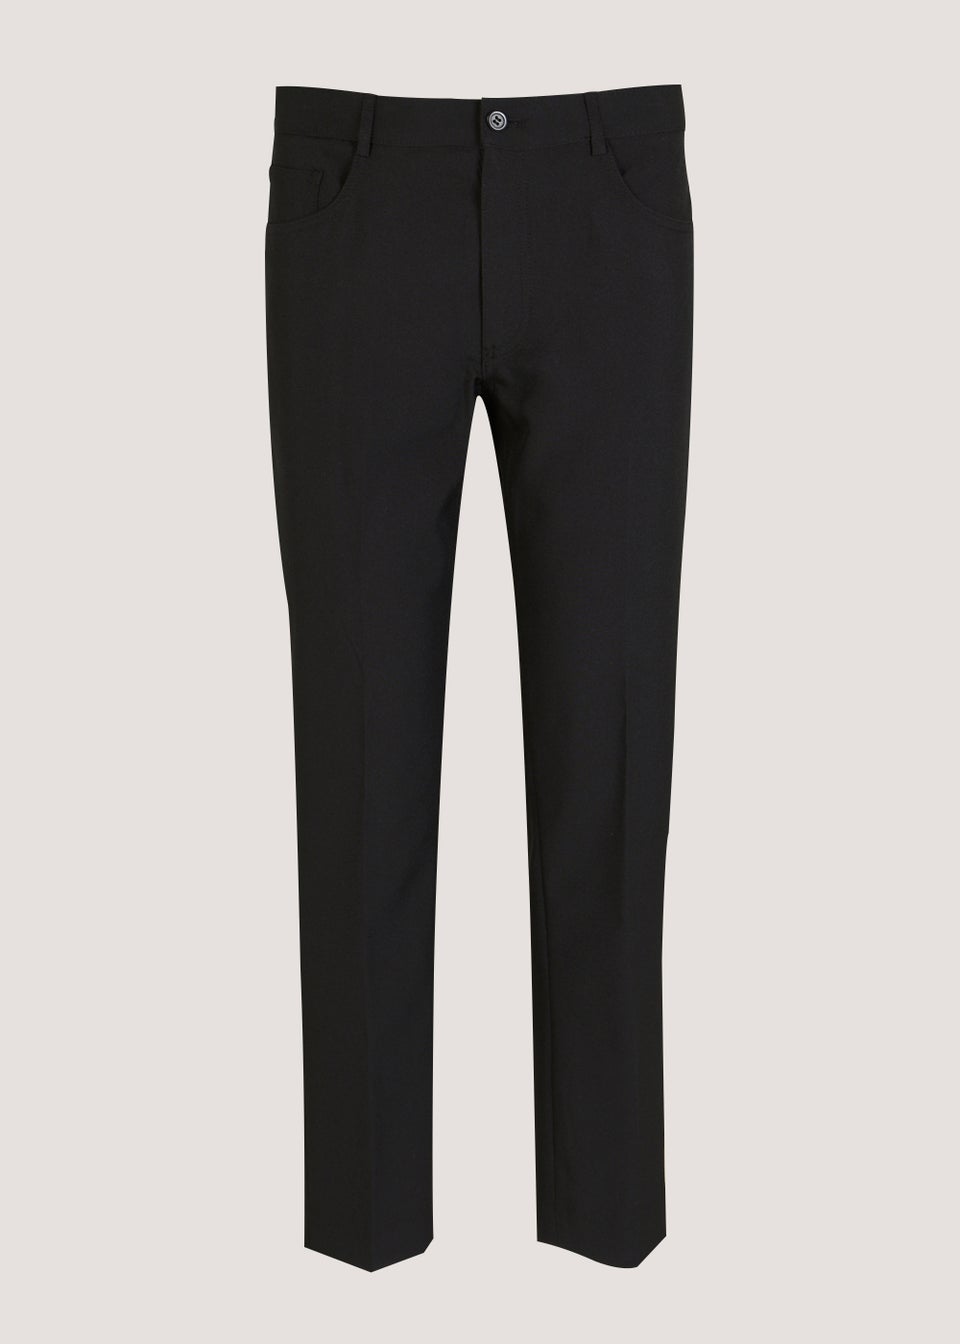 Men's Black Formal Trousers, Slim & Regular Fit